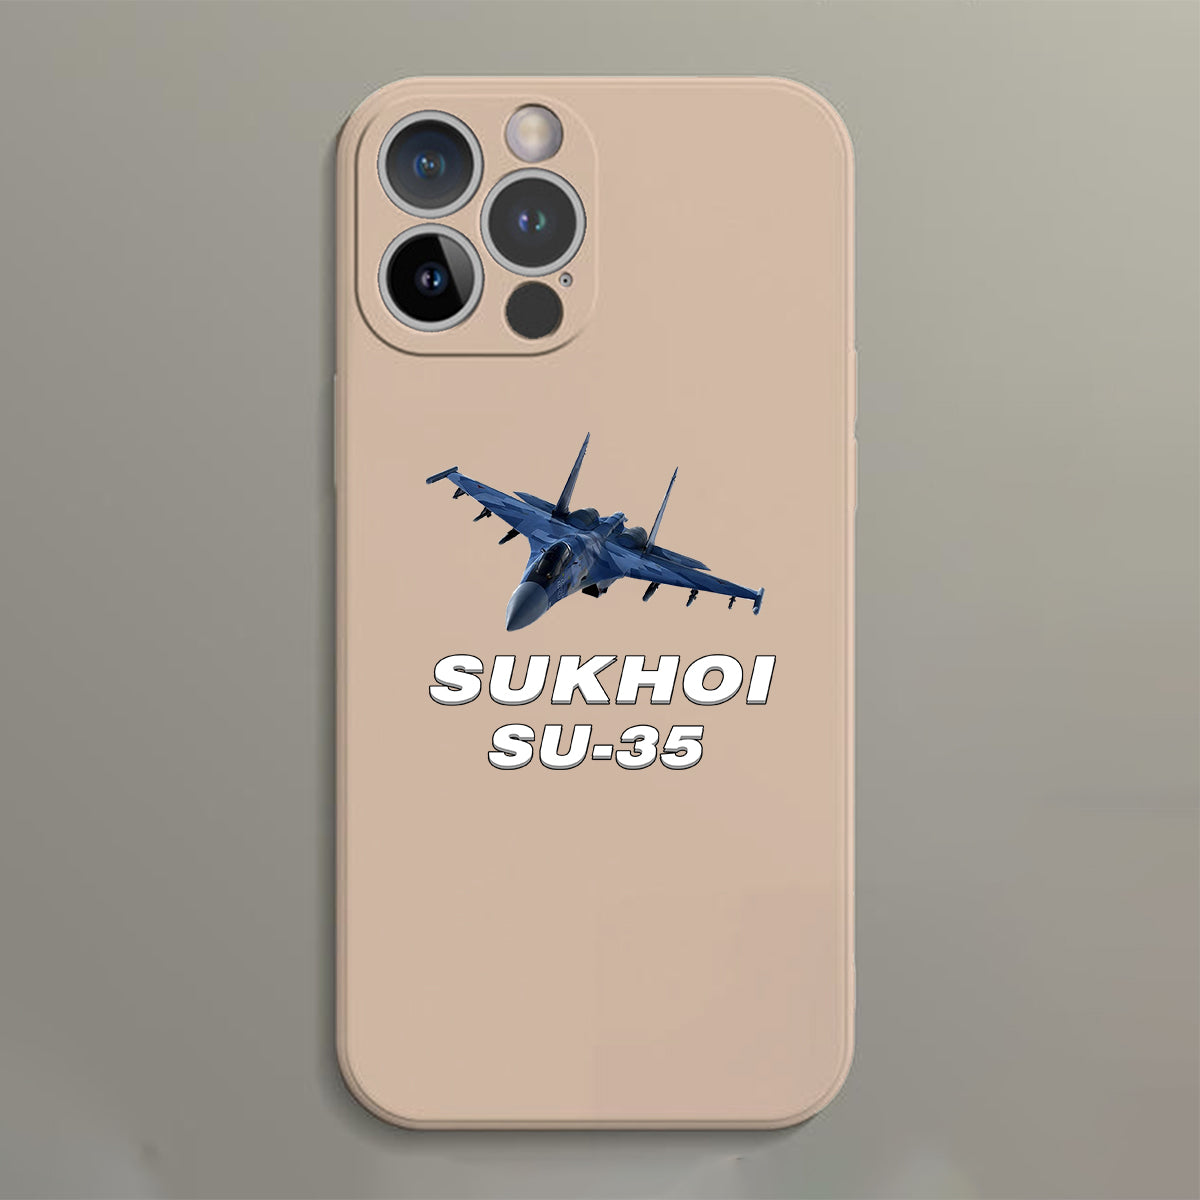 The Sukhoi SU-35 Designed Soft Silicone iPhone Cases